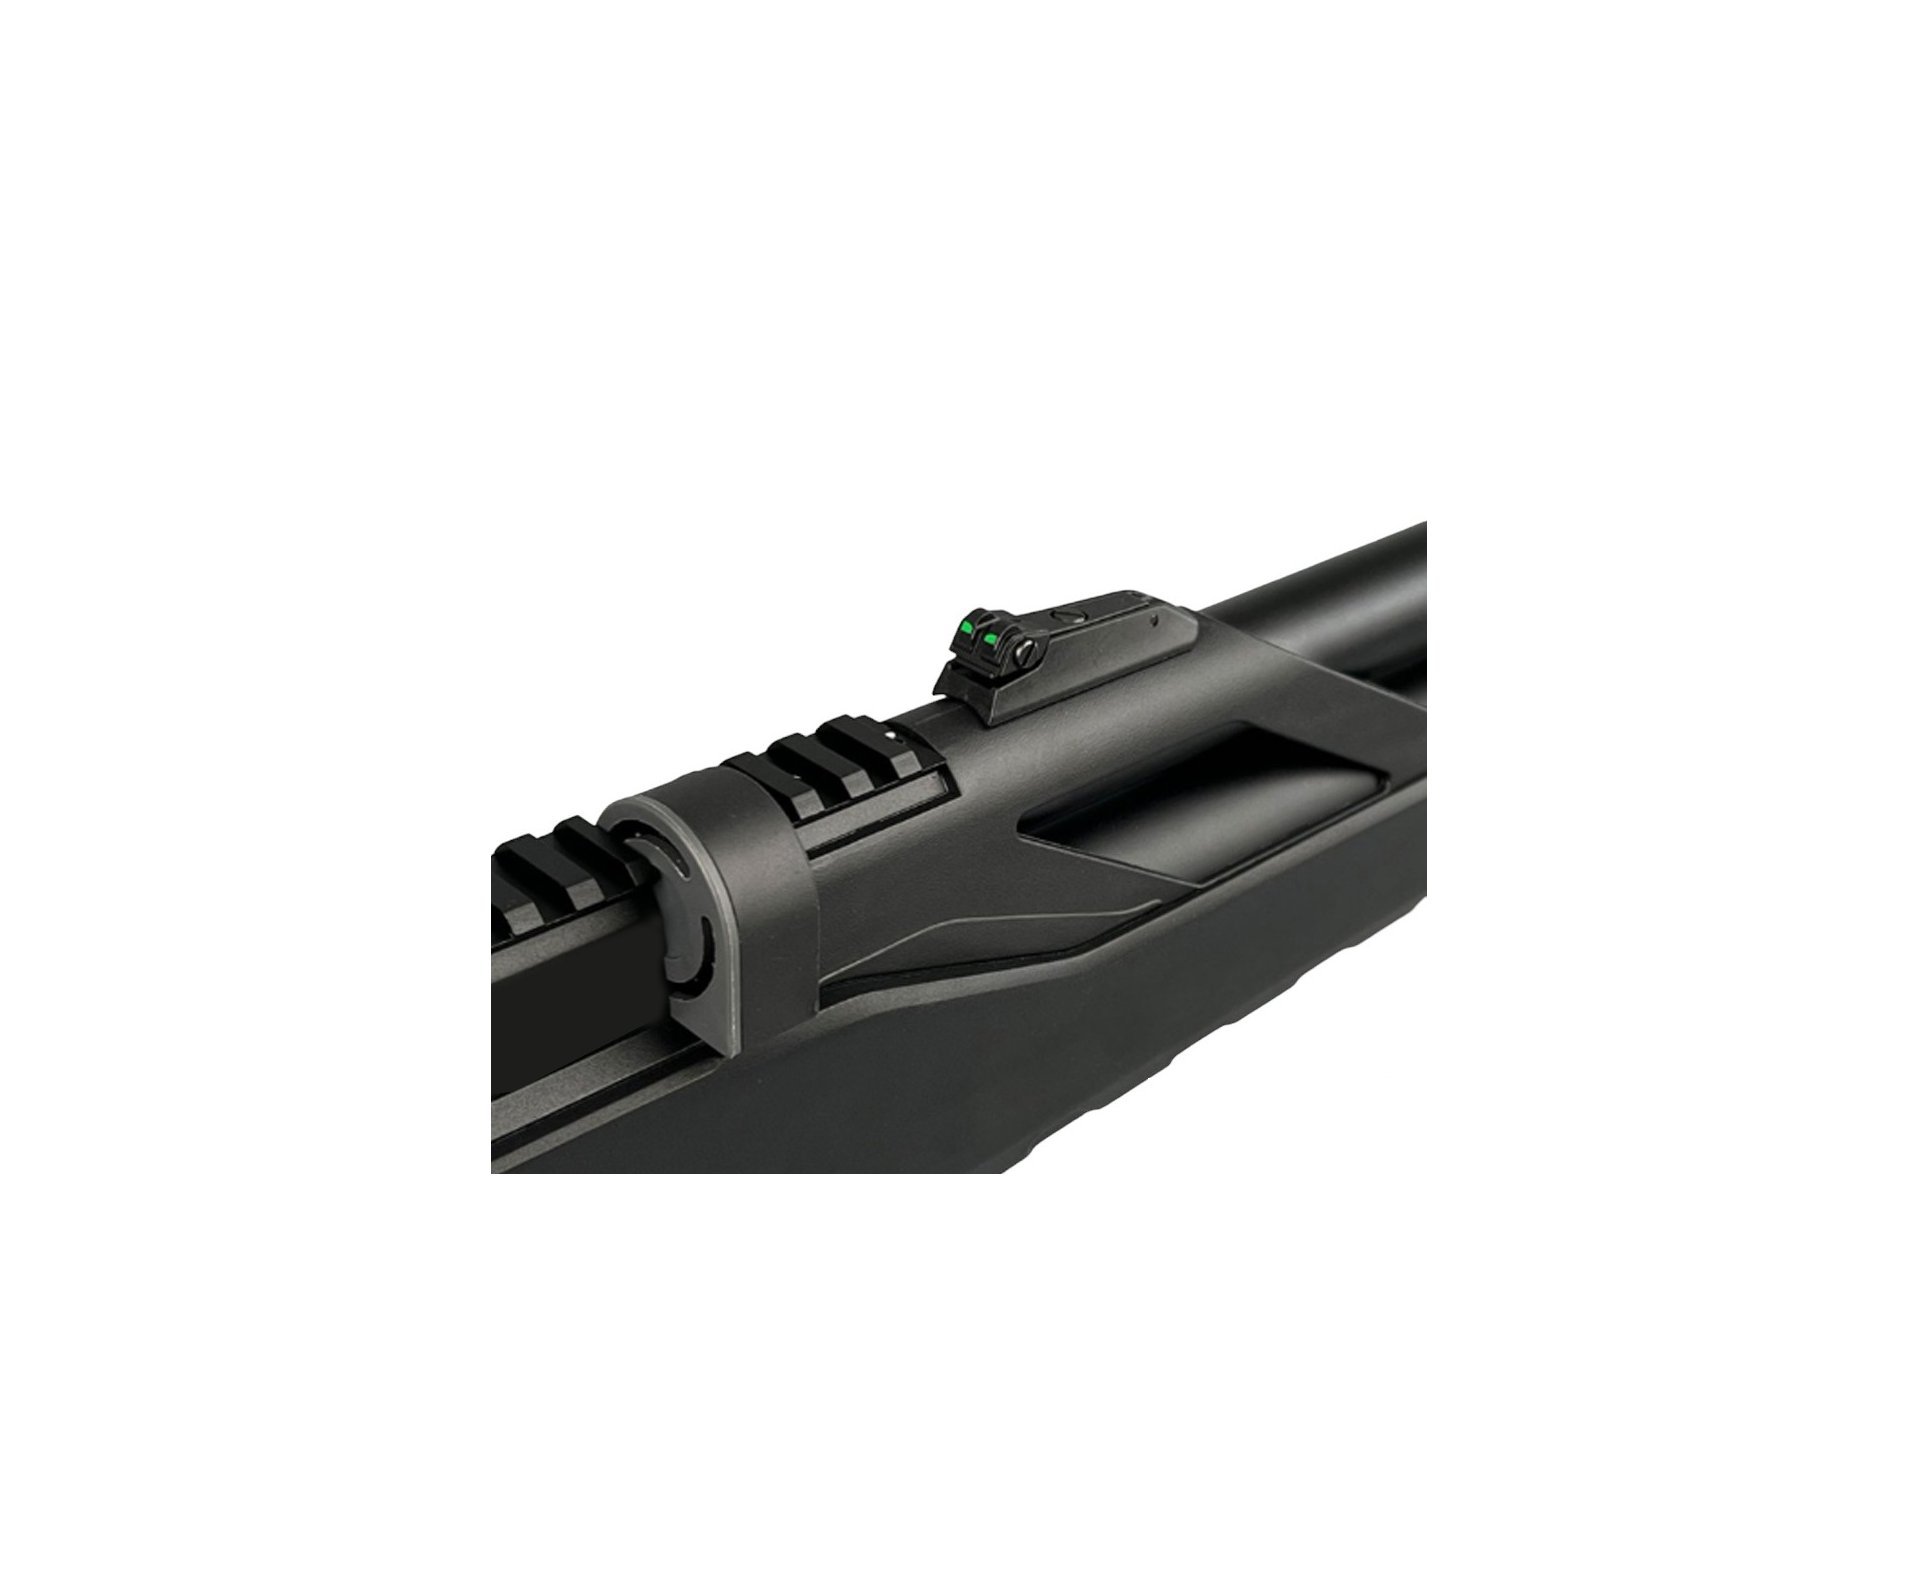 Carabina de Pressão PCP Artemis T-REX 4.5mm com Válvula Reguladora - Fixxar + Bomba + Capa